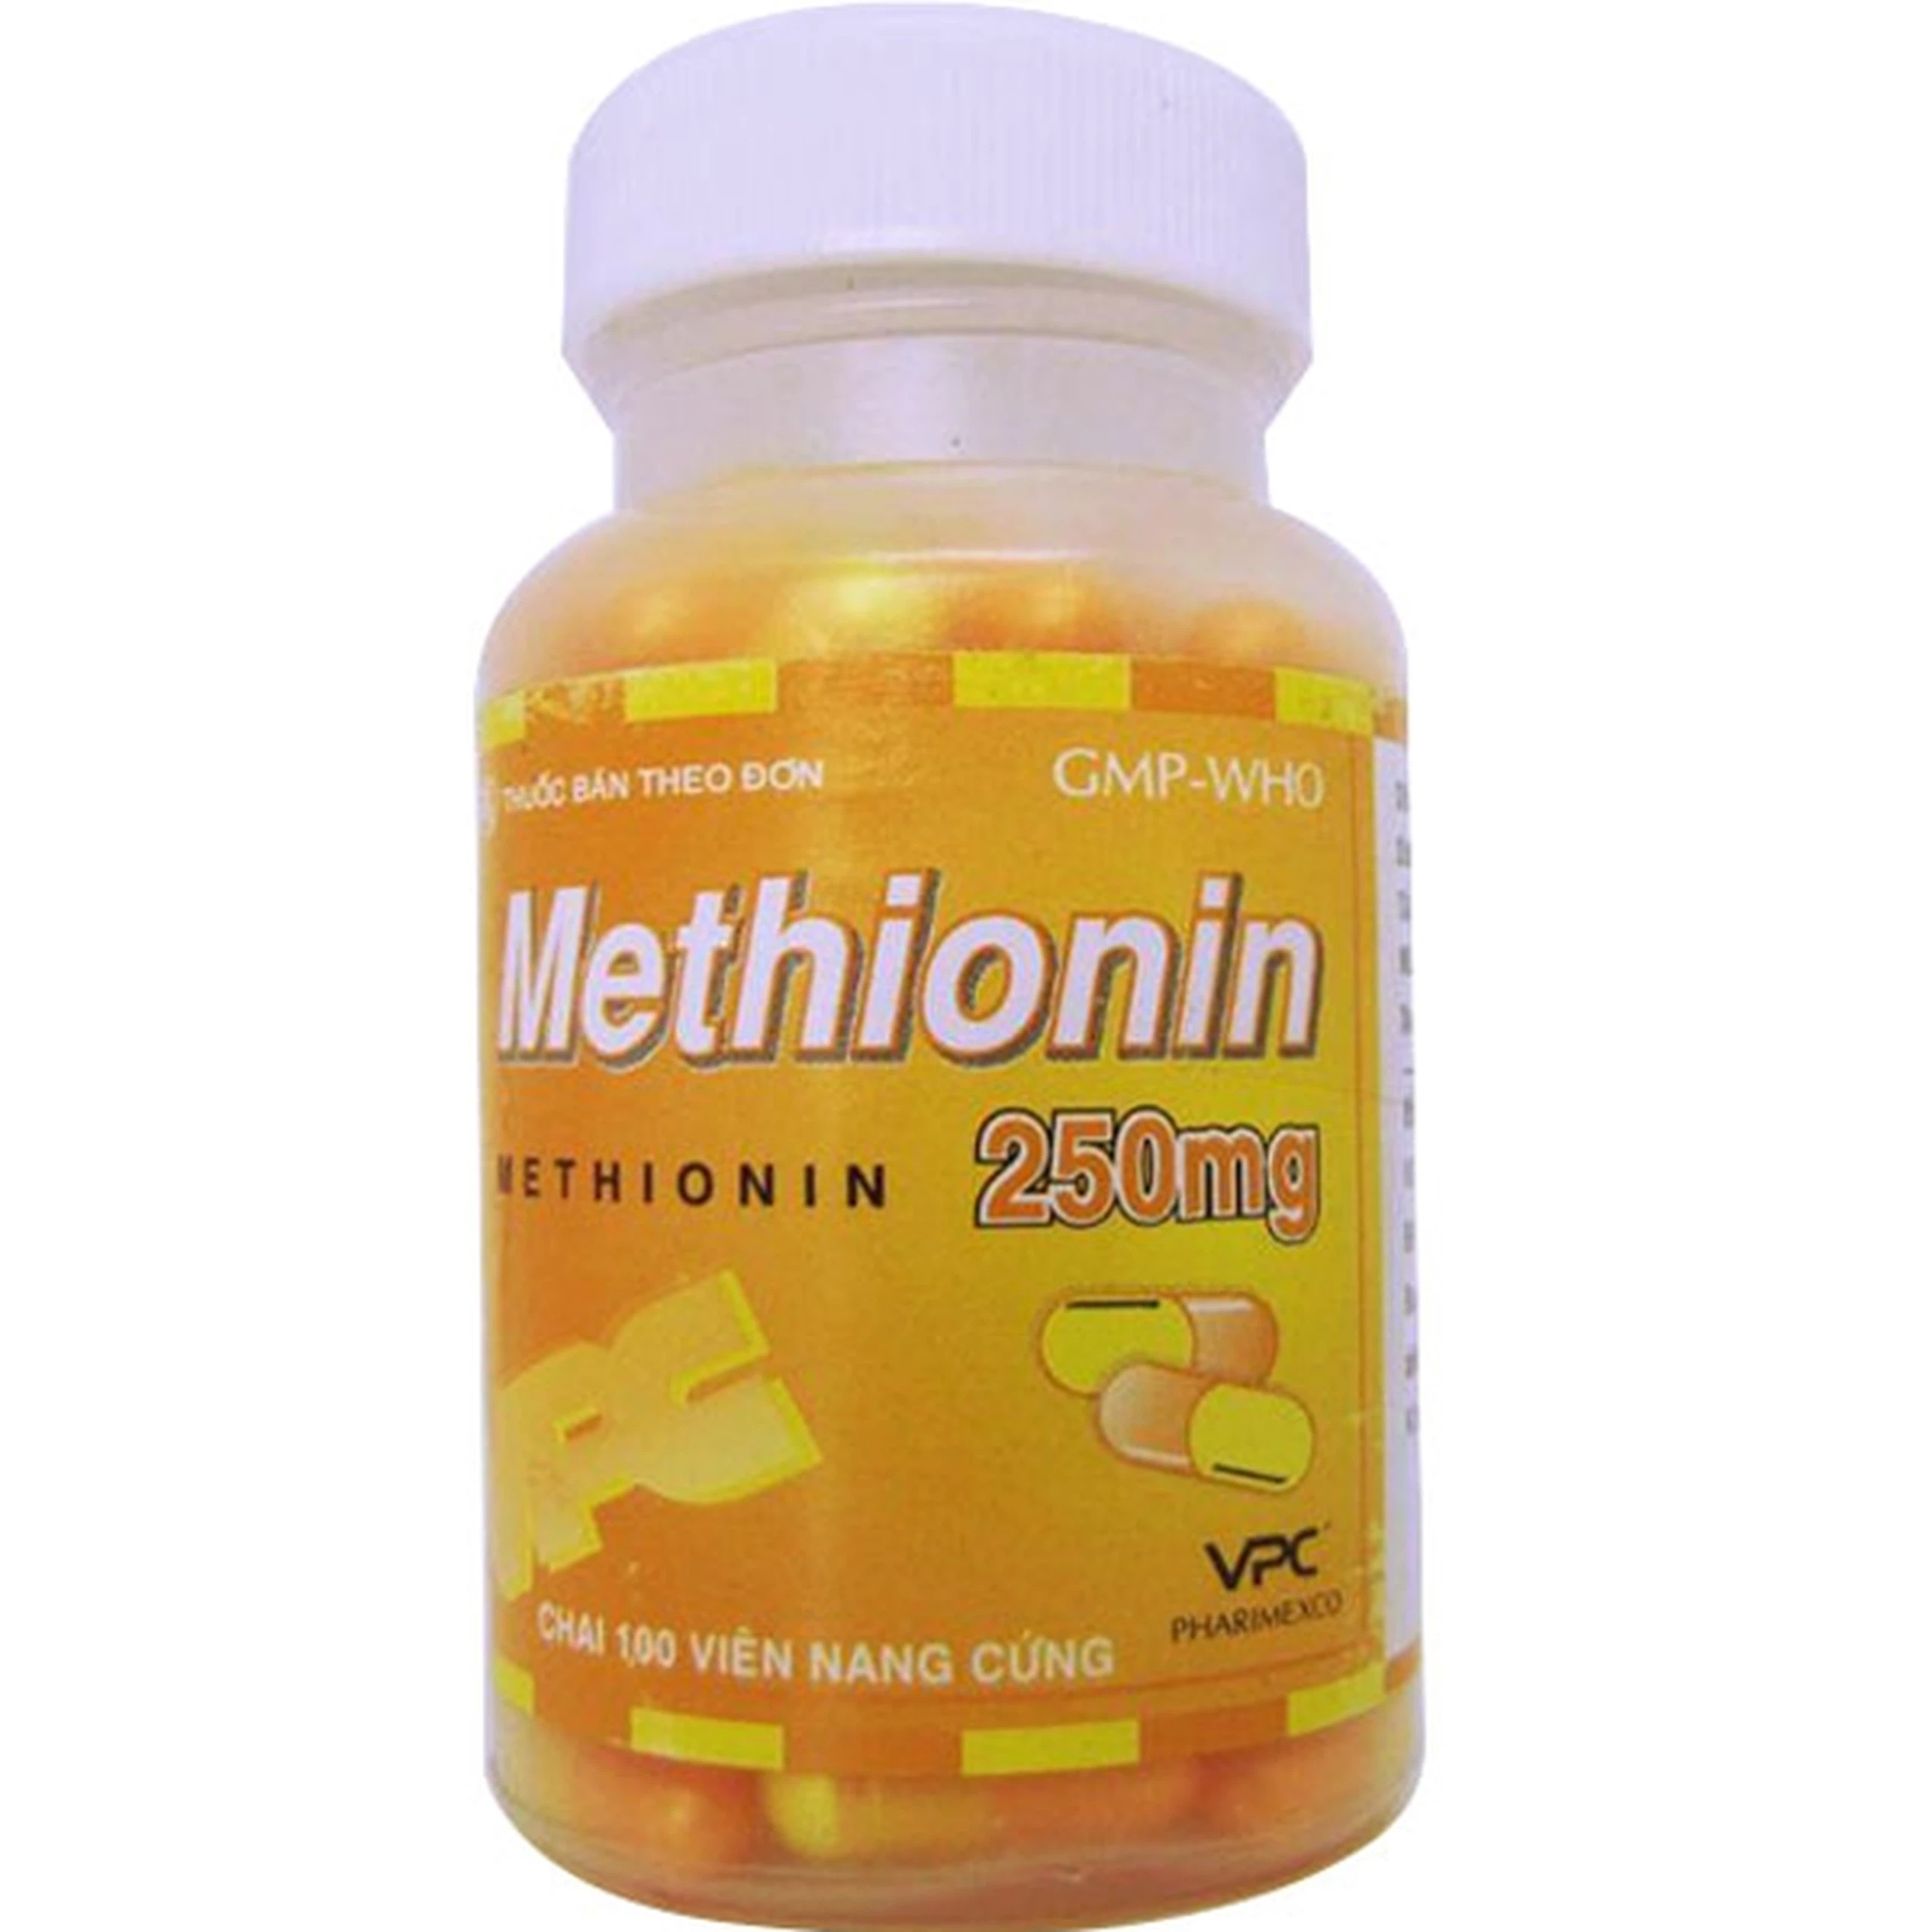 Viên nang cứng Methionin 250mg Pharimexco điều trị quá liều paracetamol (100 viên)